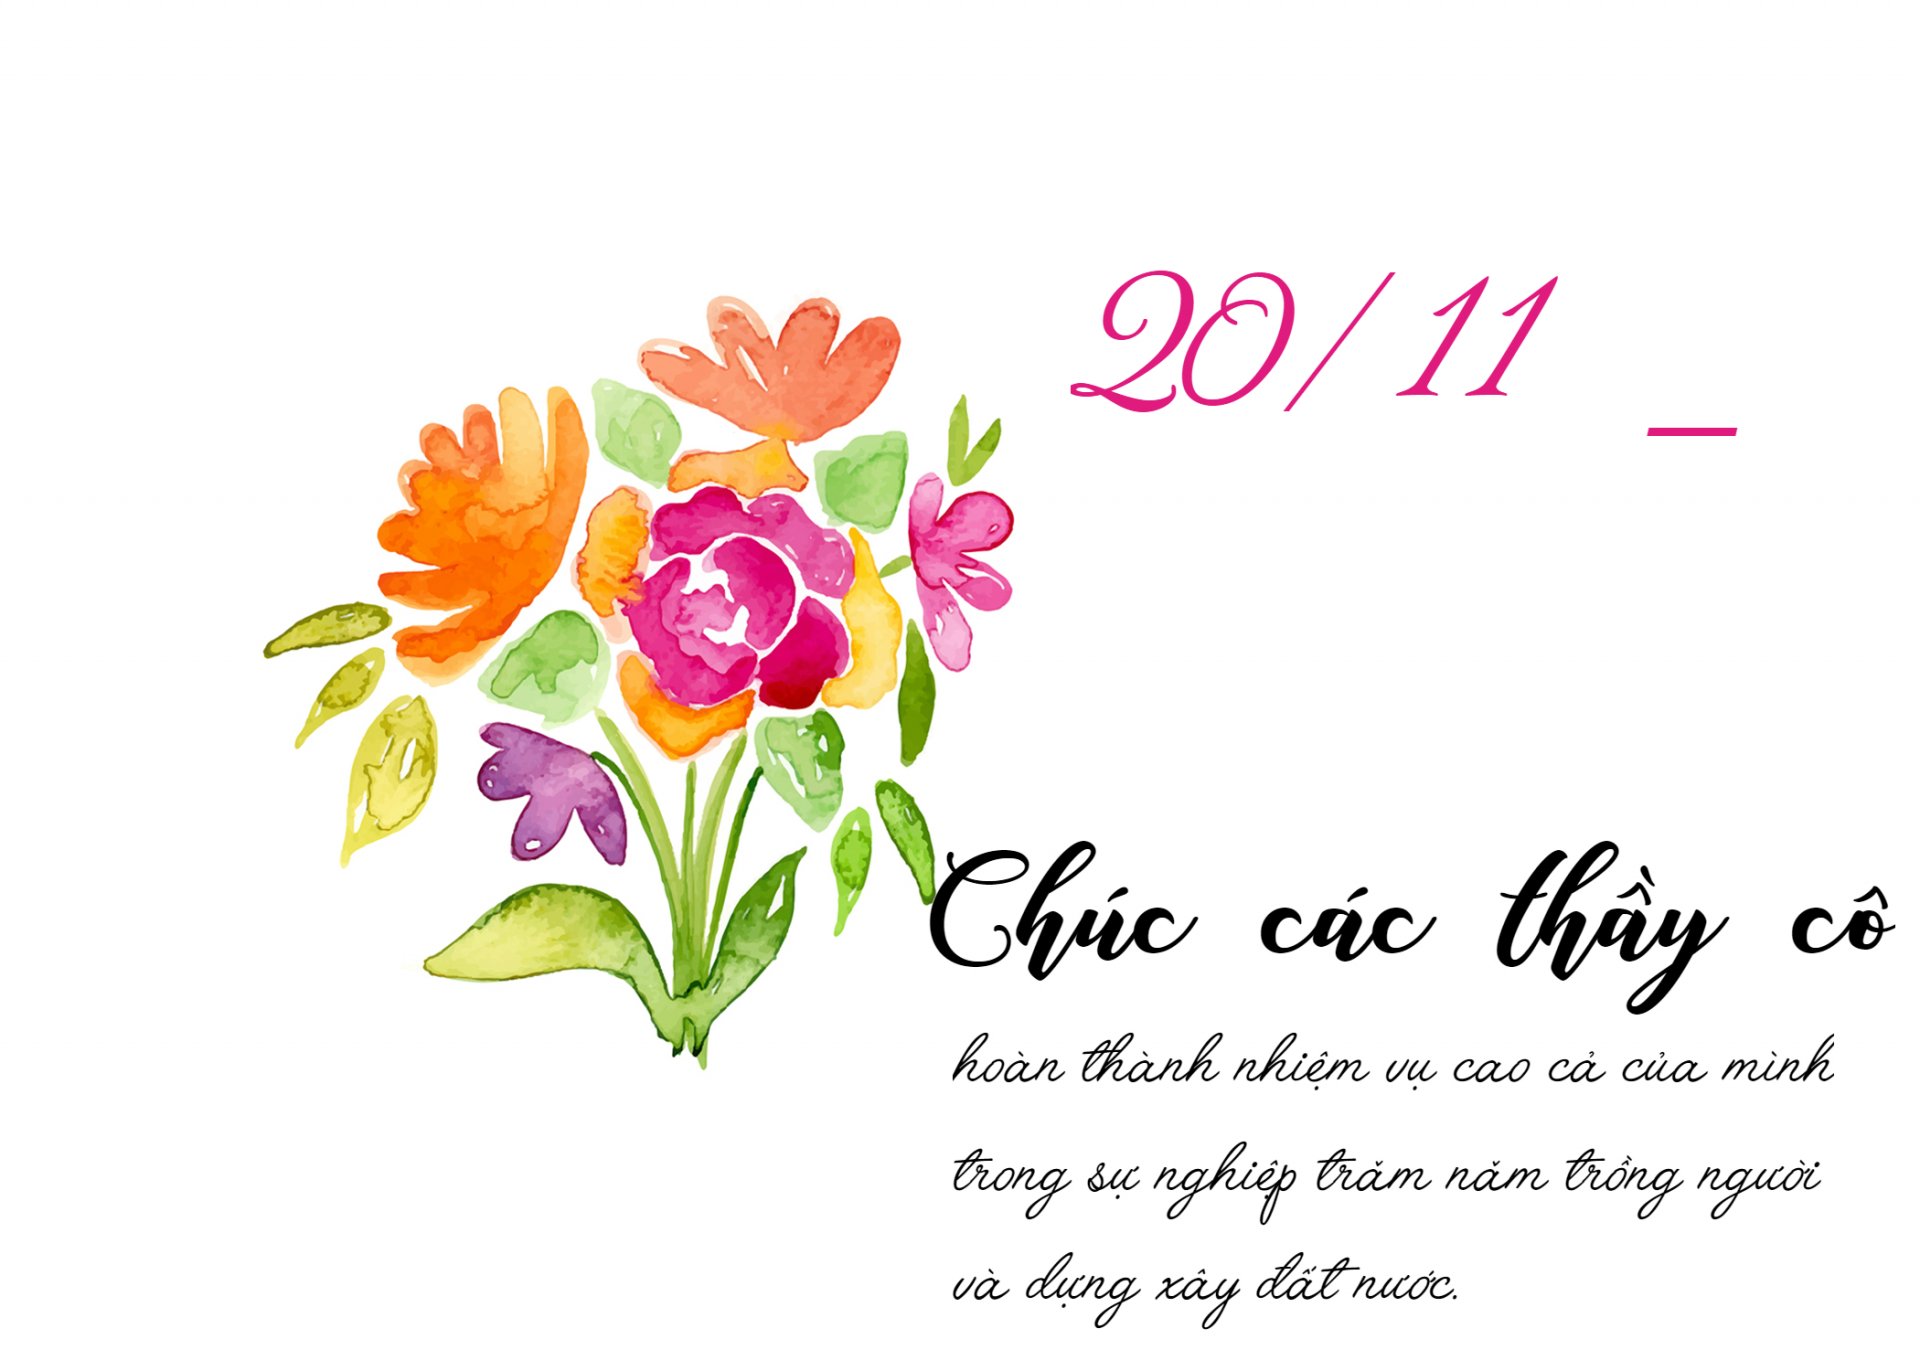 10 mẫu thiệp chúc mừng ngày Nhà giáo Việt Nam 2011 đẹp và ý nghĩa